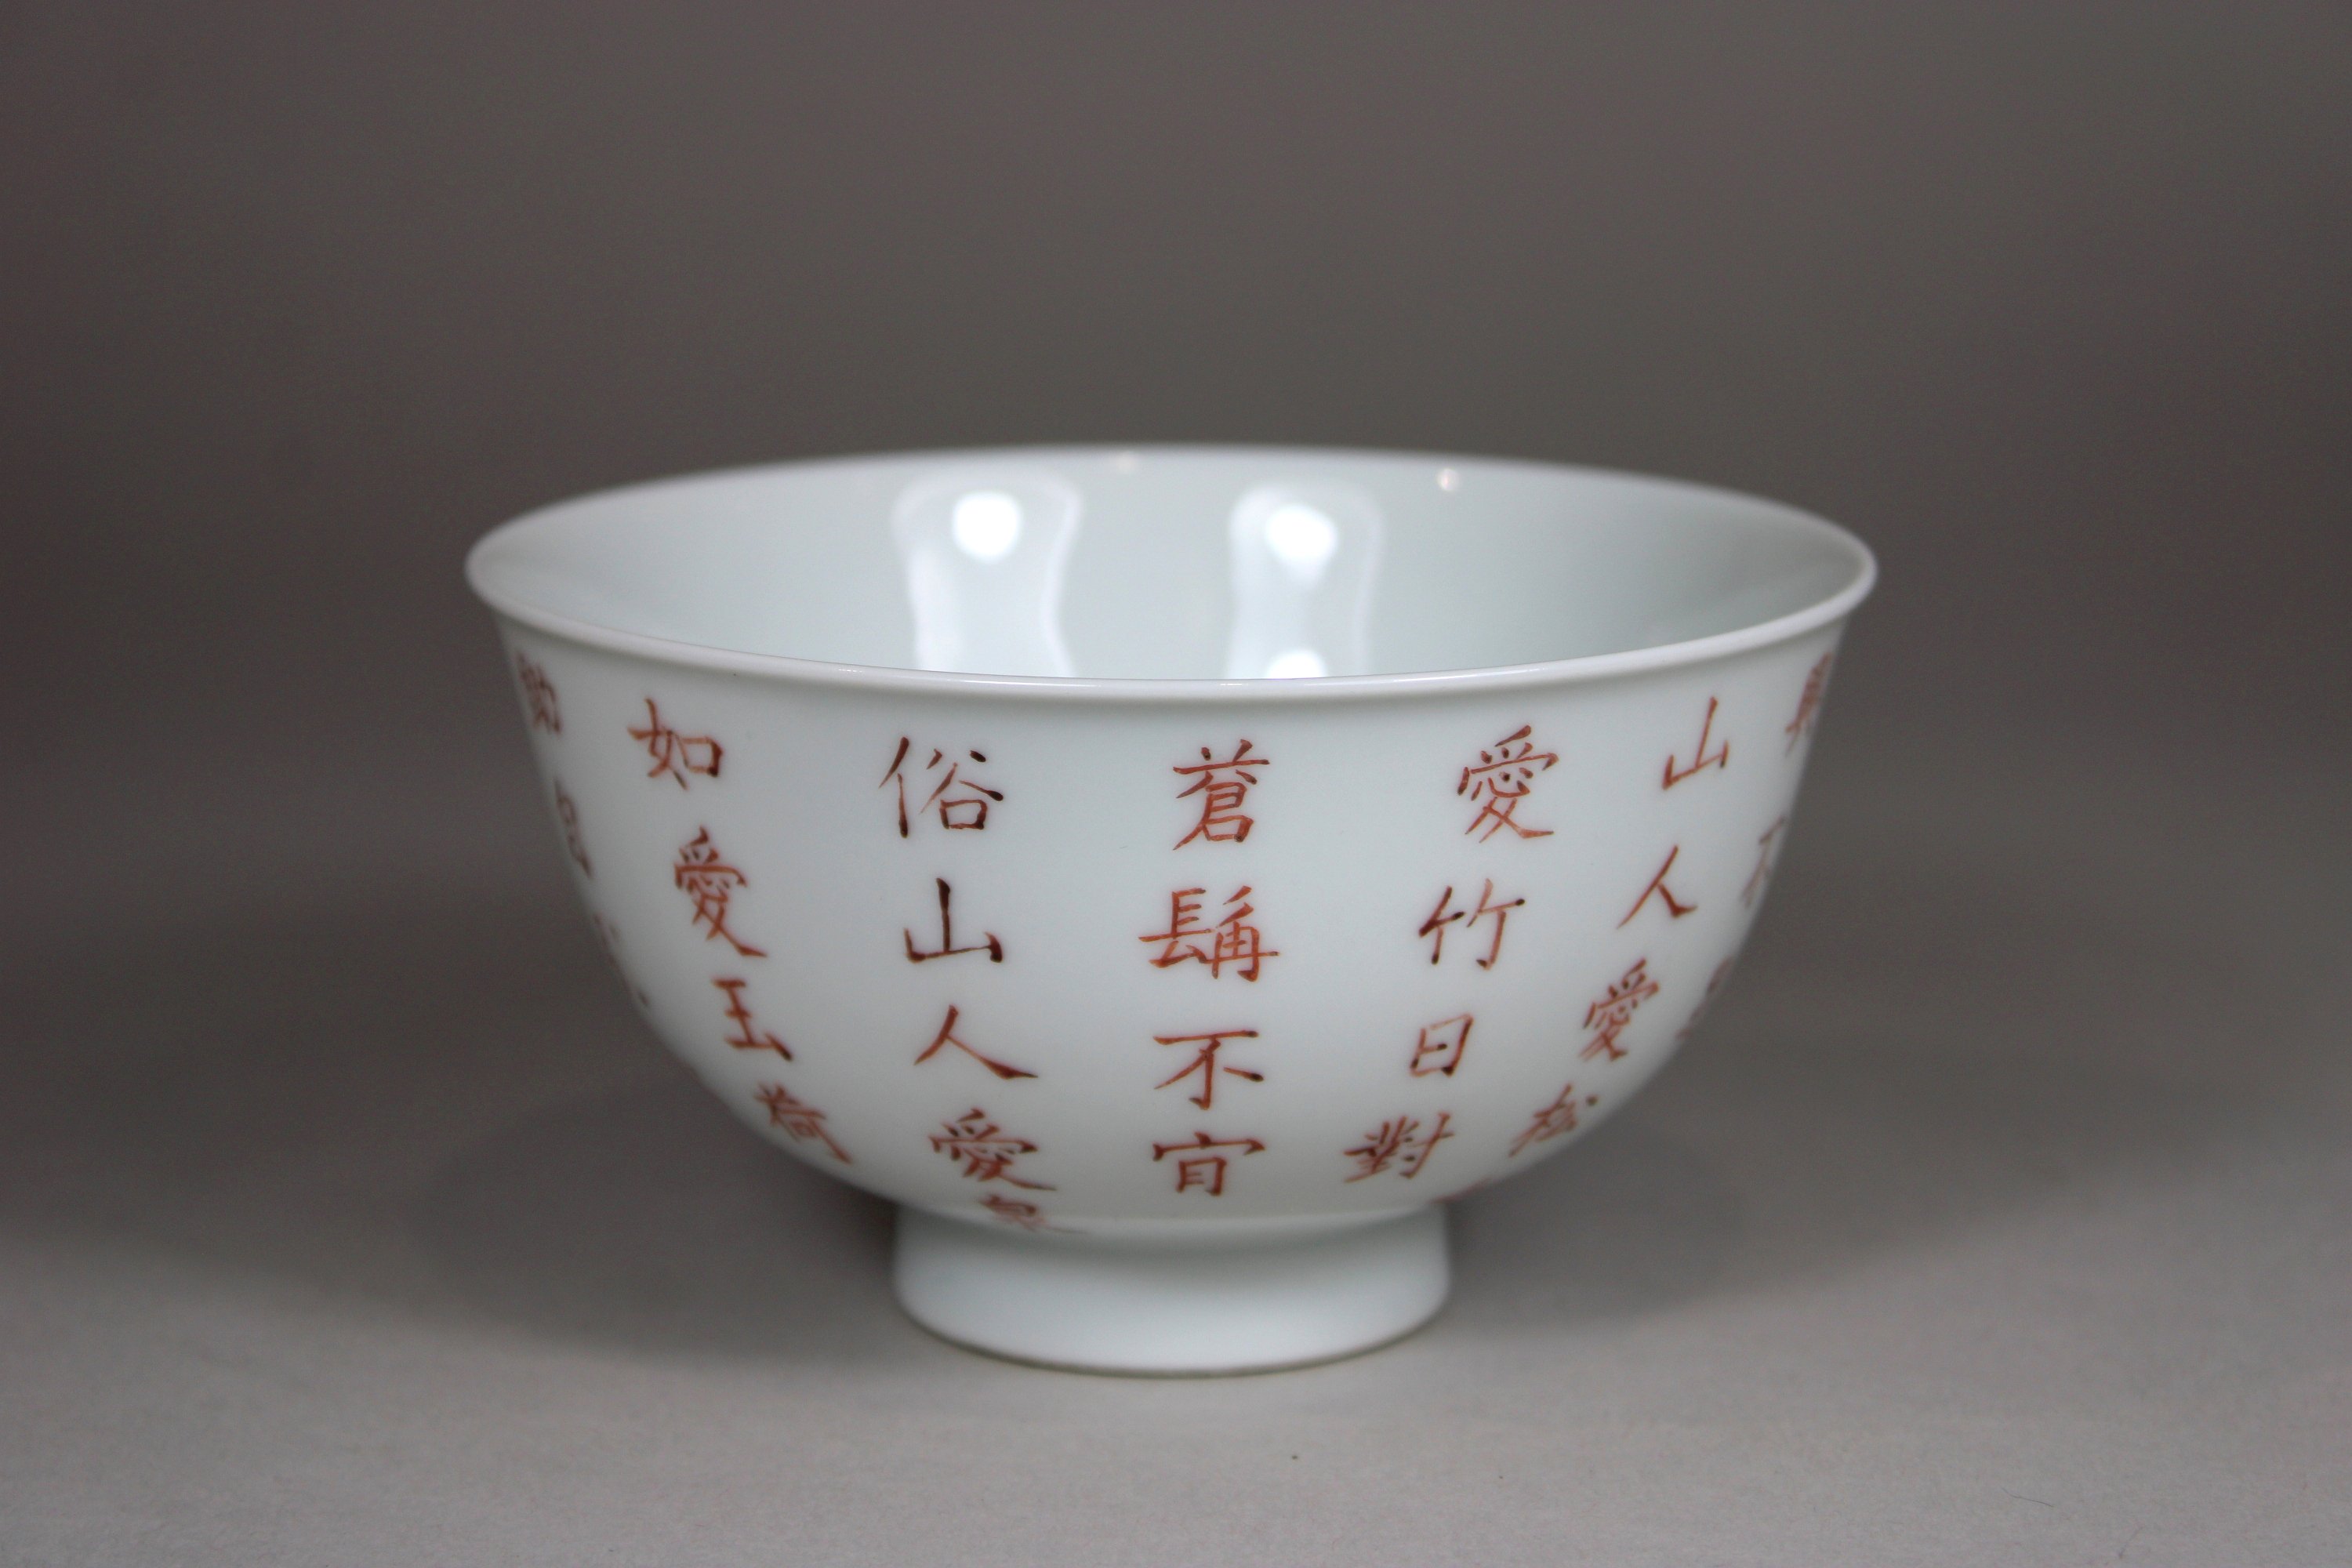 Schale, China, Porzellan, Sechszeichnen Guangxu Marke, Kalligraphie, H.: 6,7 cm, Dm.: 11,7 cm. Gute